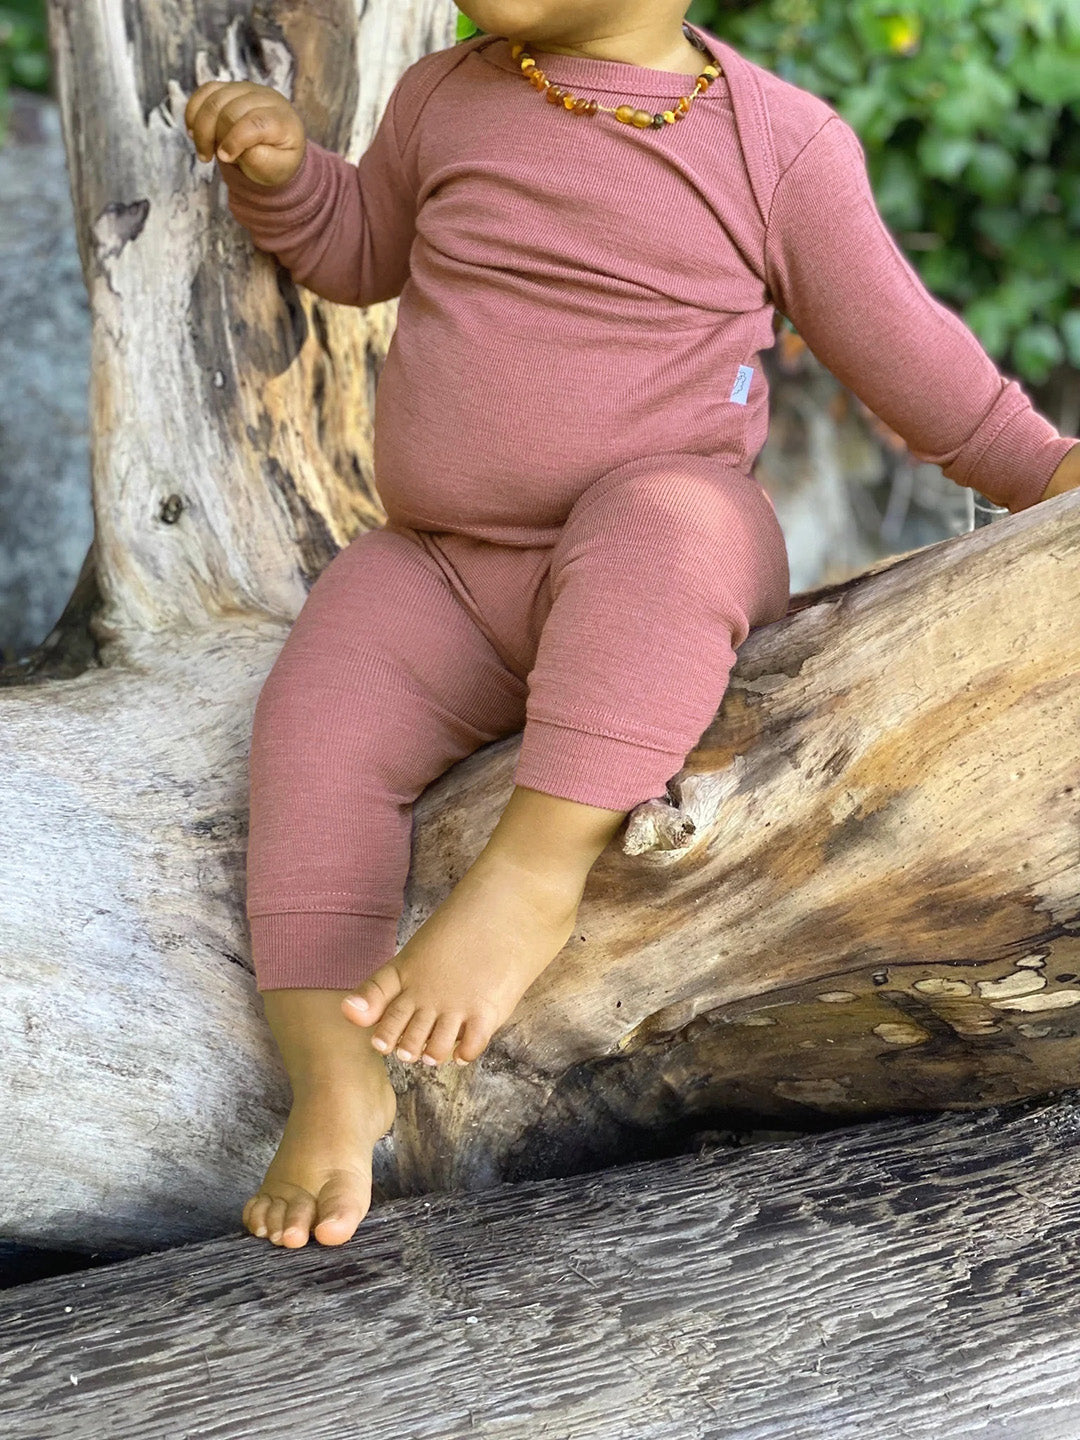 Baby in Simply Merino wool pajamas in dusky rose